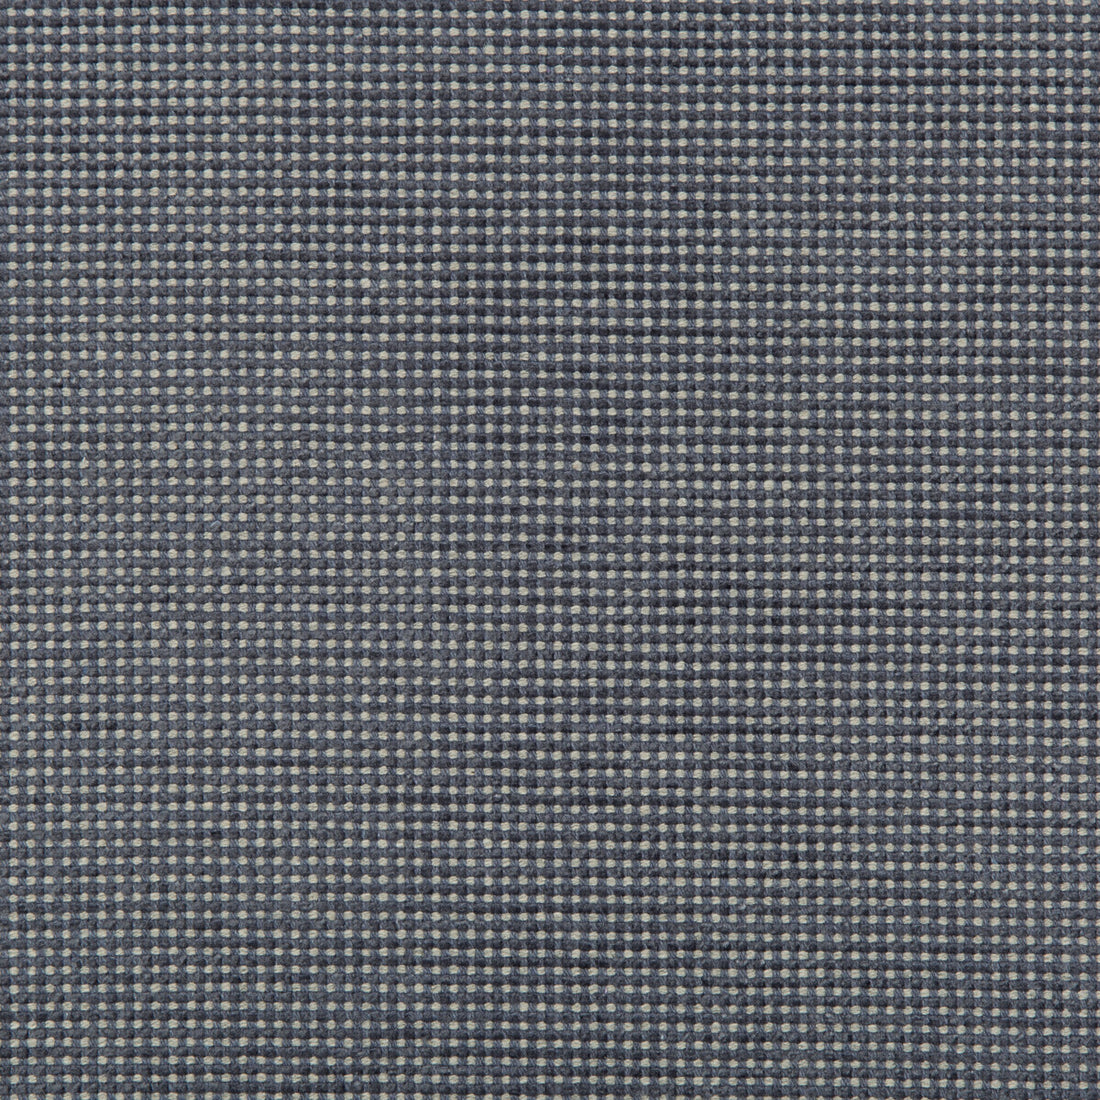 Kravet Design fabric in 35576-511 color - pattern 35576.511.0 - by Kravet Design